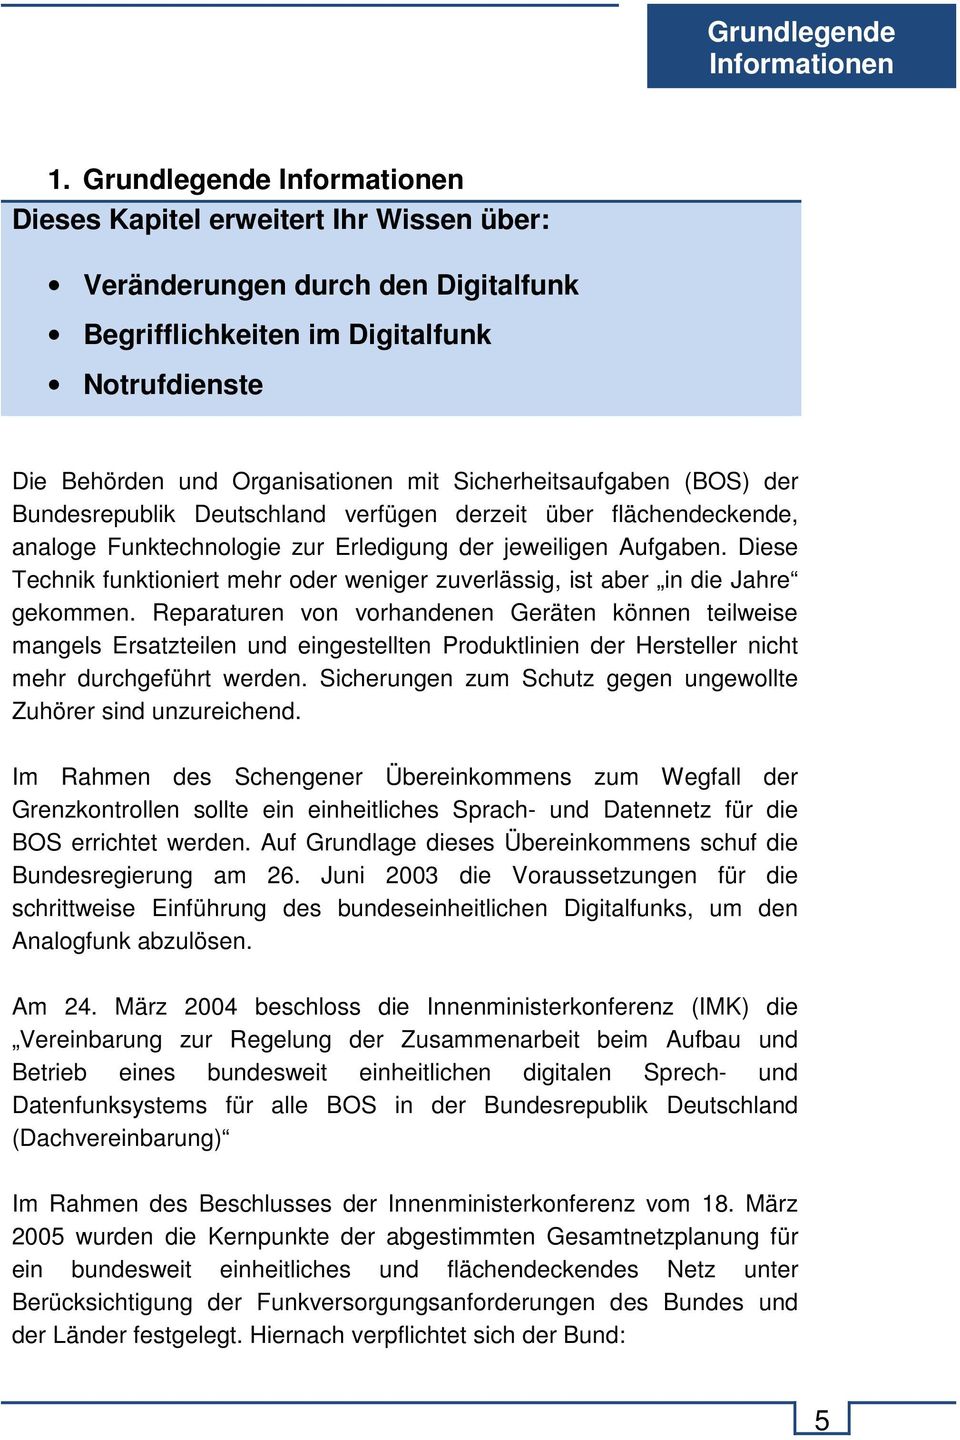 Sicherheitsaufgaben (BOS) der Bundesrepublik Deutschland verfügen derzeit über flächendeckende, analoge Funktechnologie zur Erledigung der jeweiligen Aufgaben.